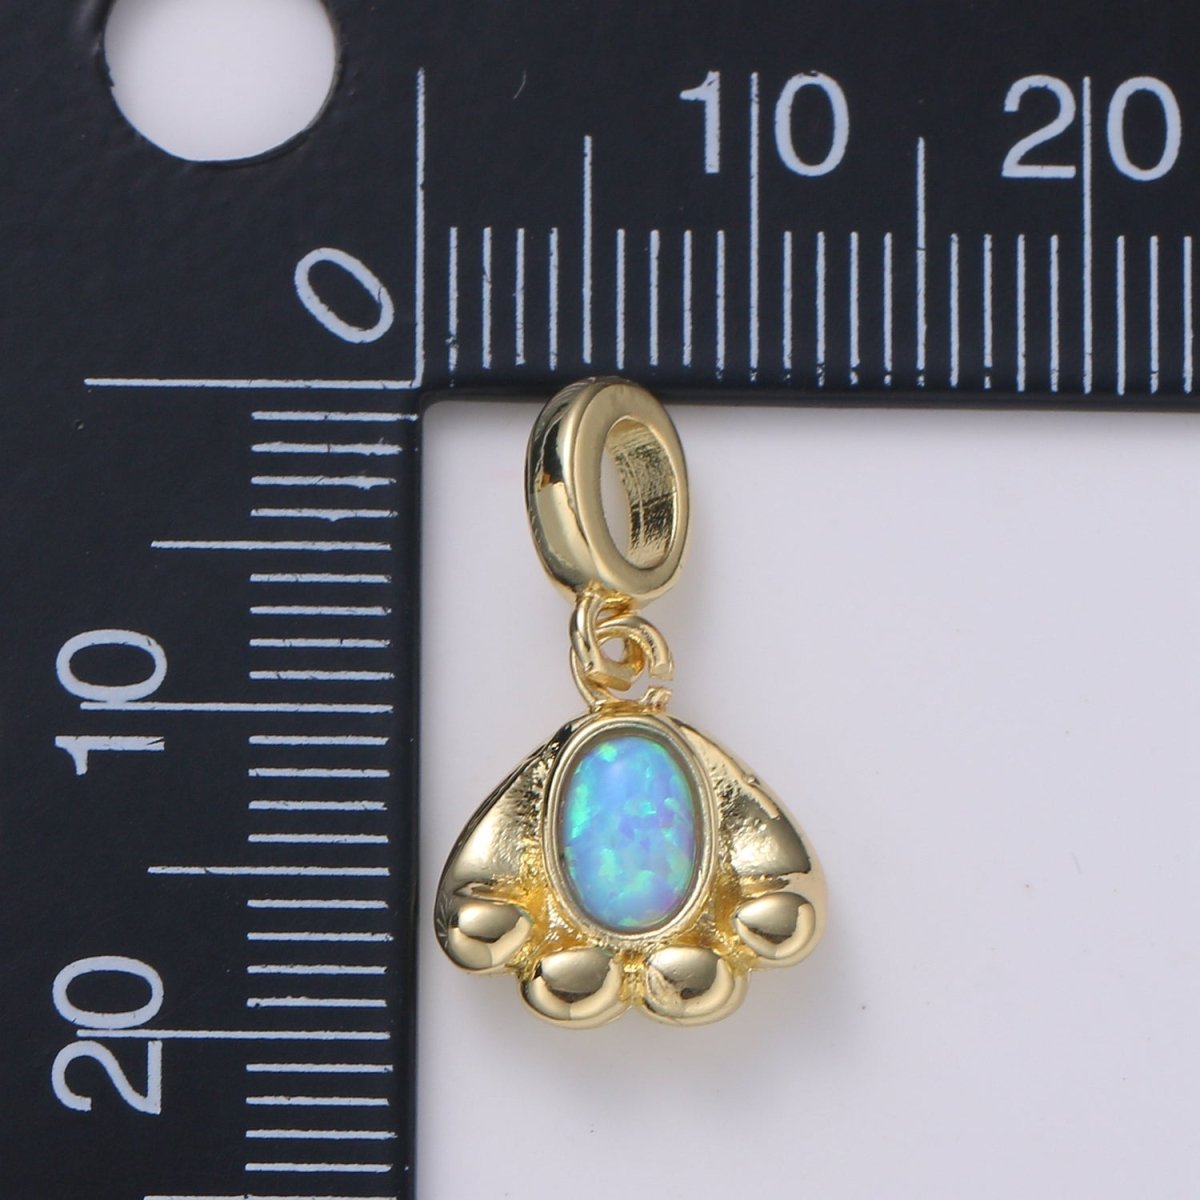 Cloud 24K Gold Opal CZ Pendant Charm Celestial Pendant Charm for Bracelet Necklace White, Blue Pendant Jewelry H-555 H-563 - DLUXCA